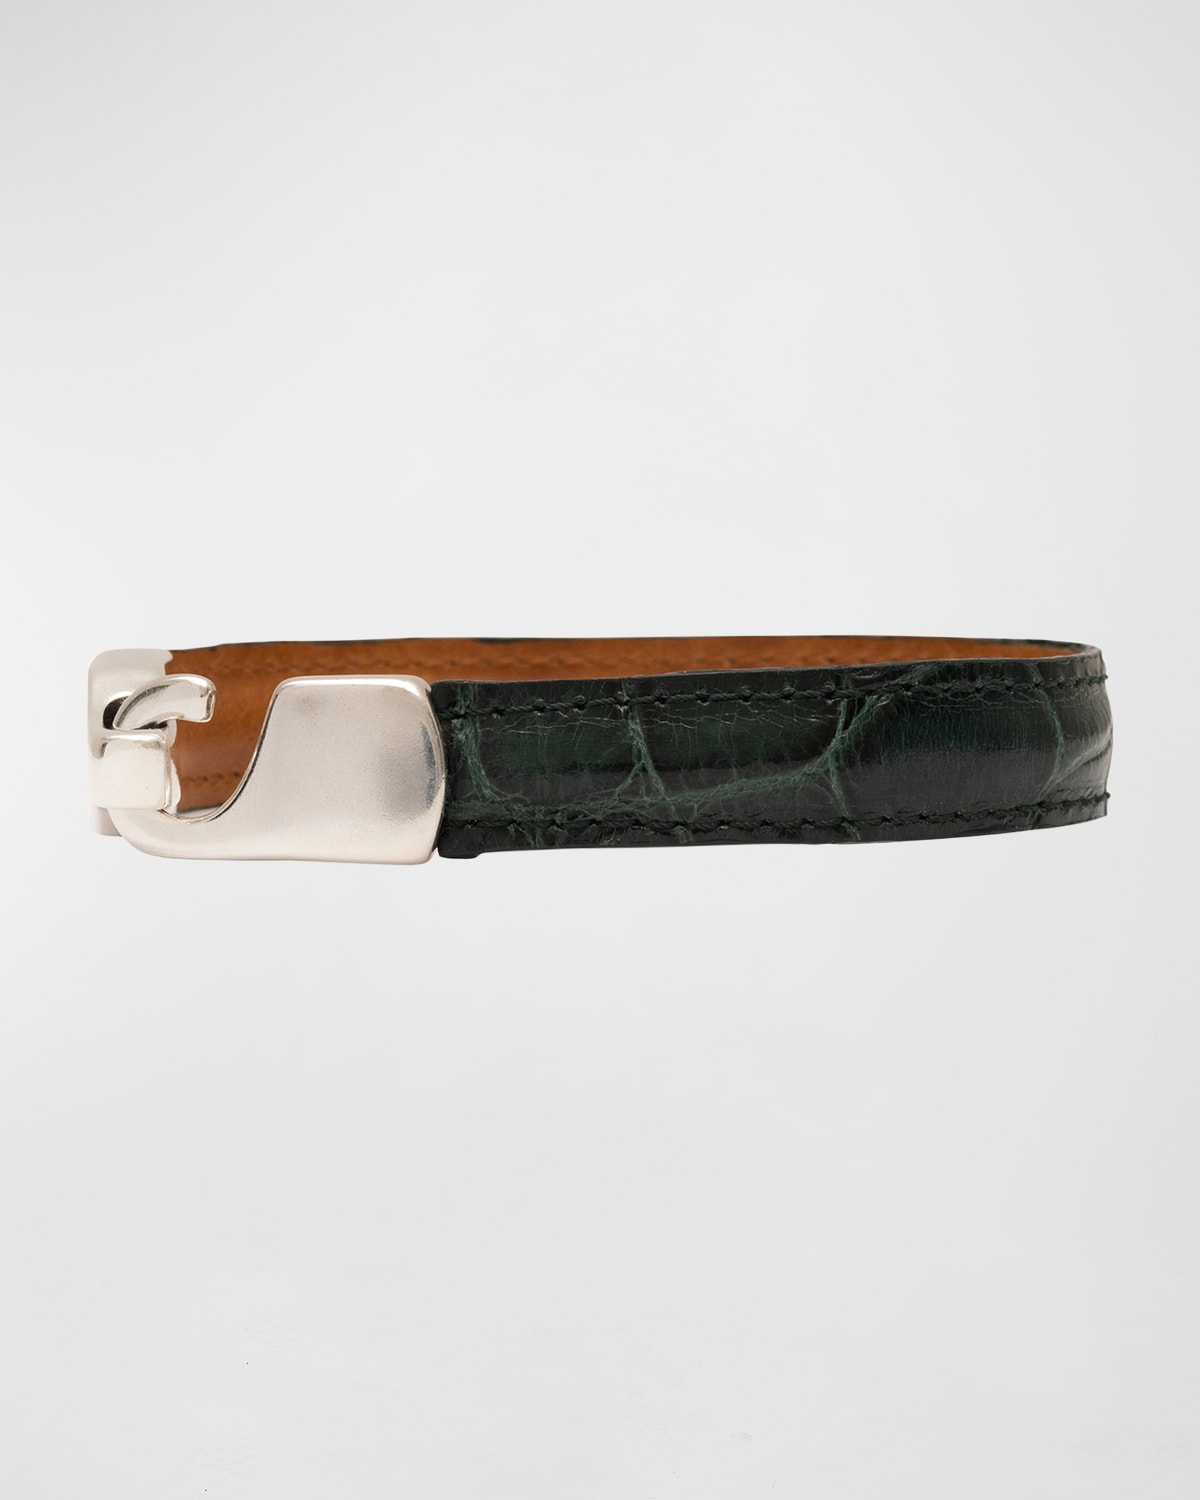 Men's Alligator Leather Bracelet